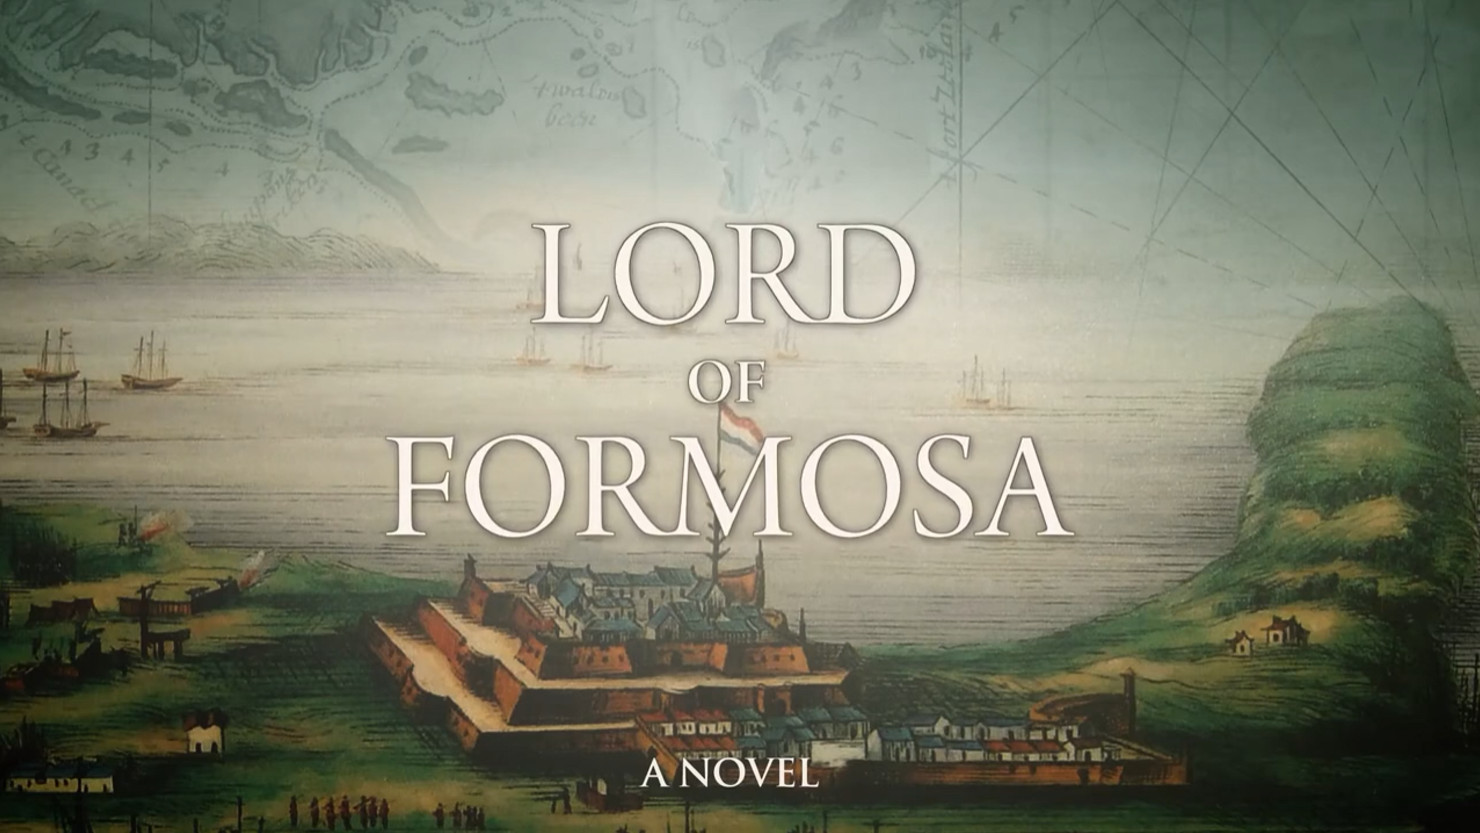 Joyce Bergvelt - Auteur/Author - Formosa, voorgoed verloren/Lord of Formosa, Commandeur van de Kaap